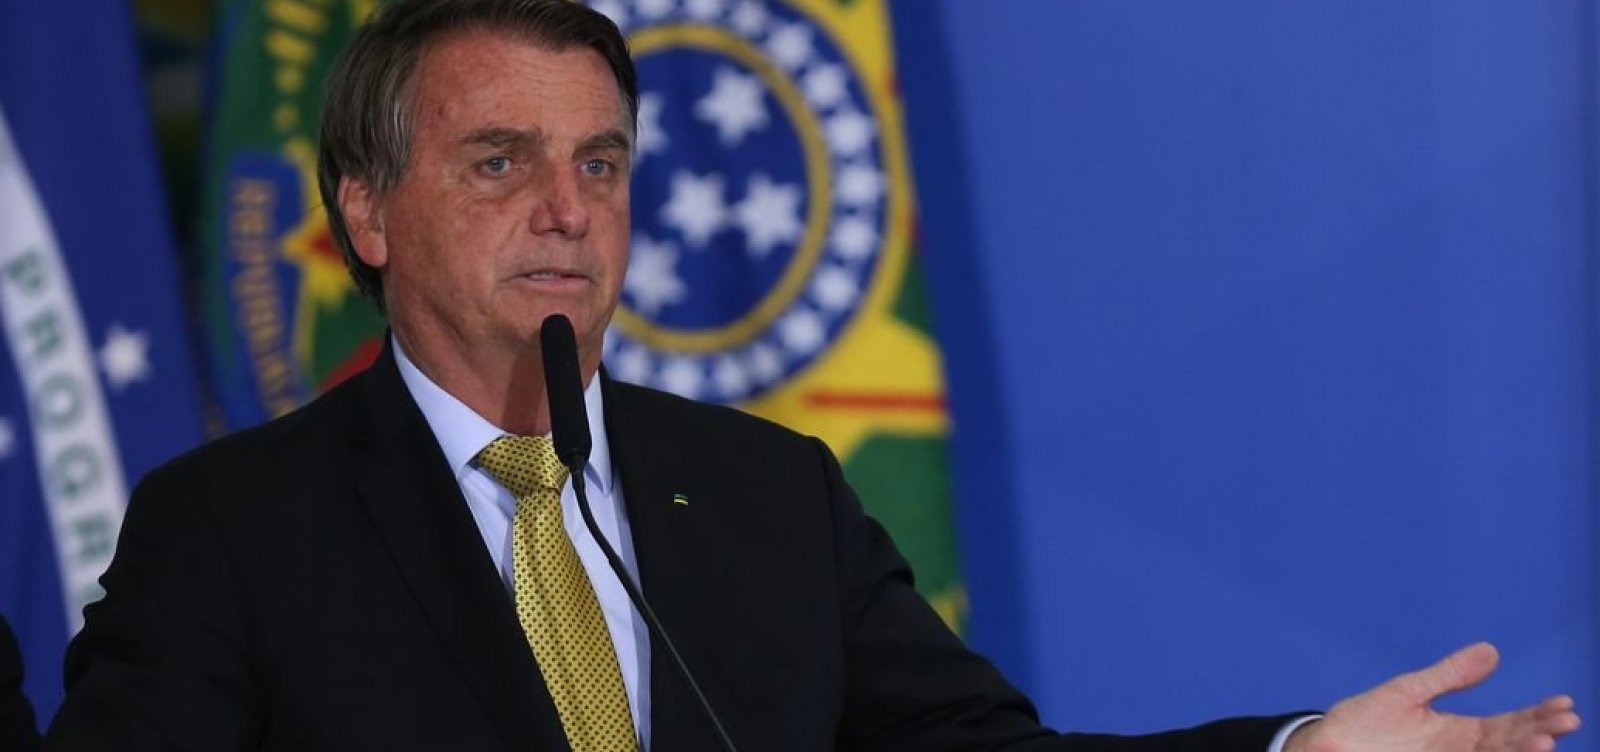 Gastos de cartões corporativos do governo Bolsonaro são divulgados; valor atinge R$ 27,6 milhões